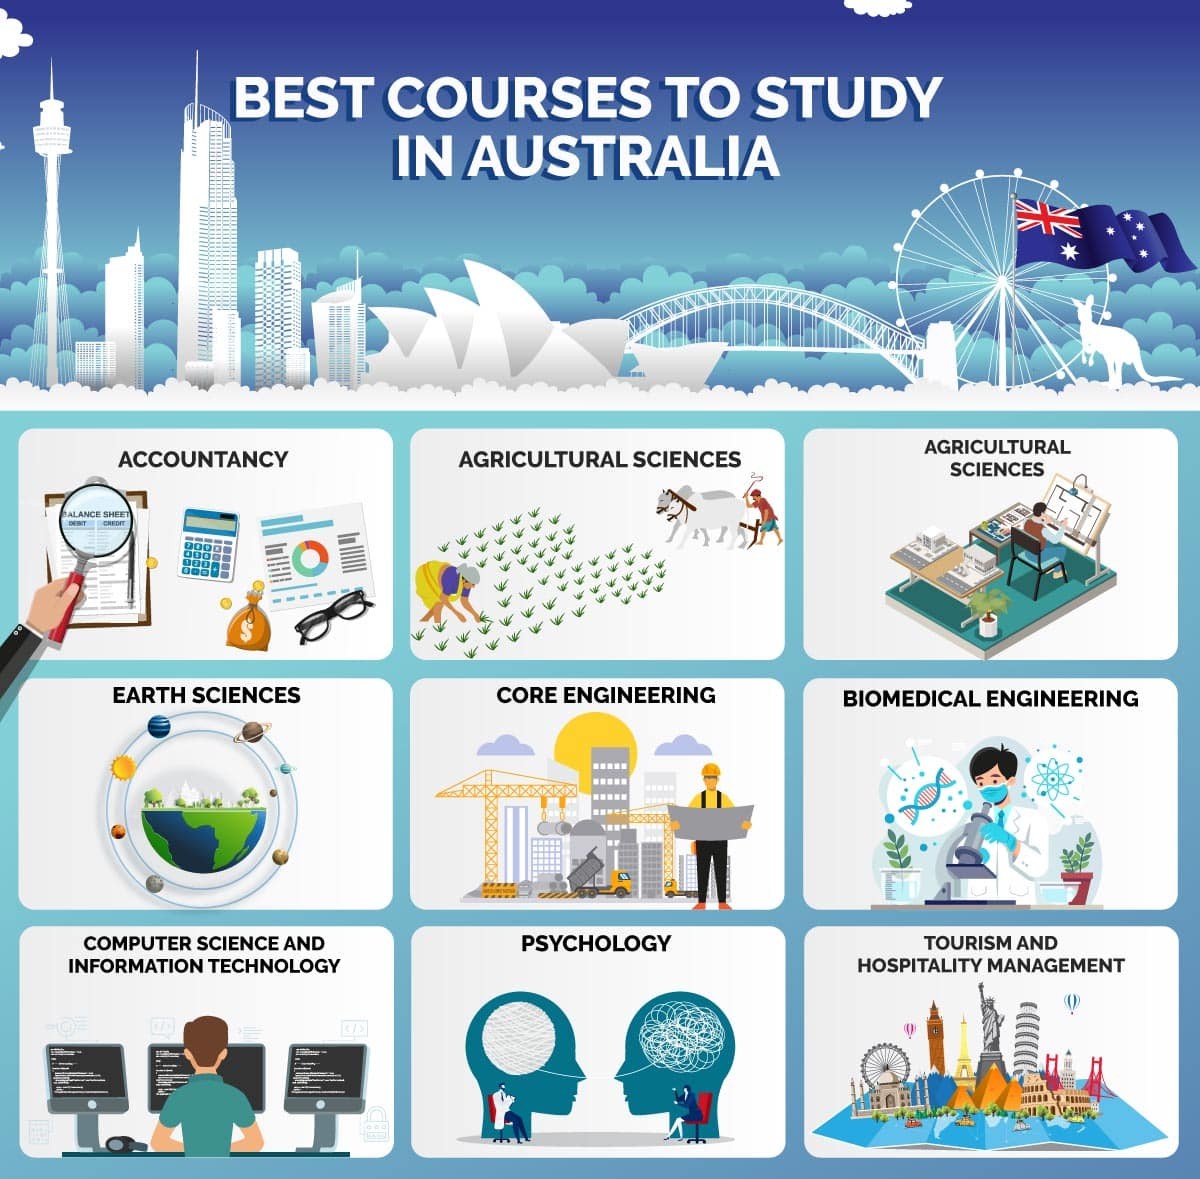 tourism undergraduate courses australia